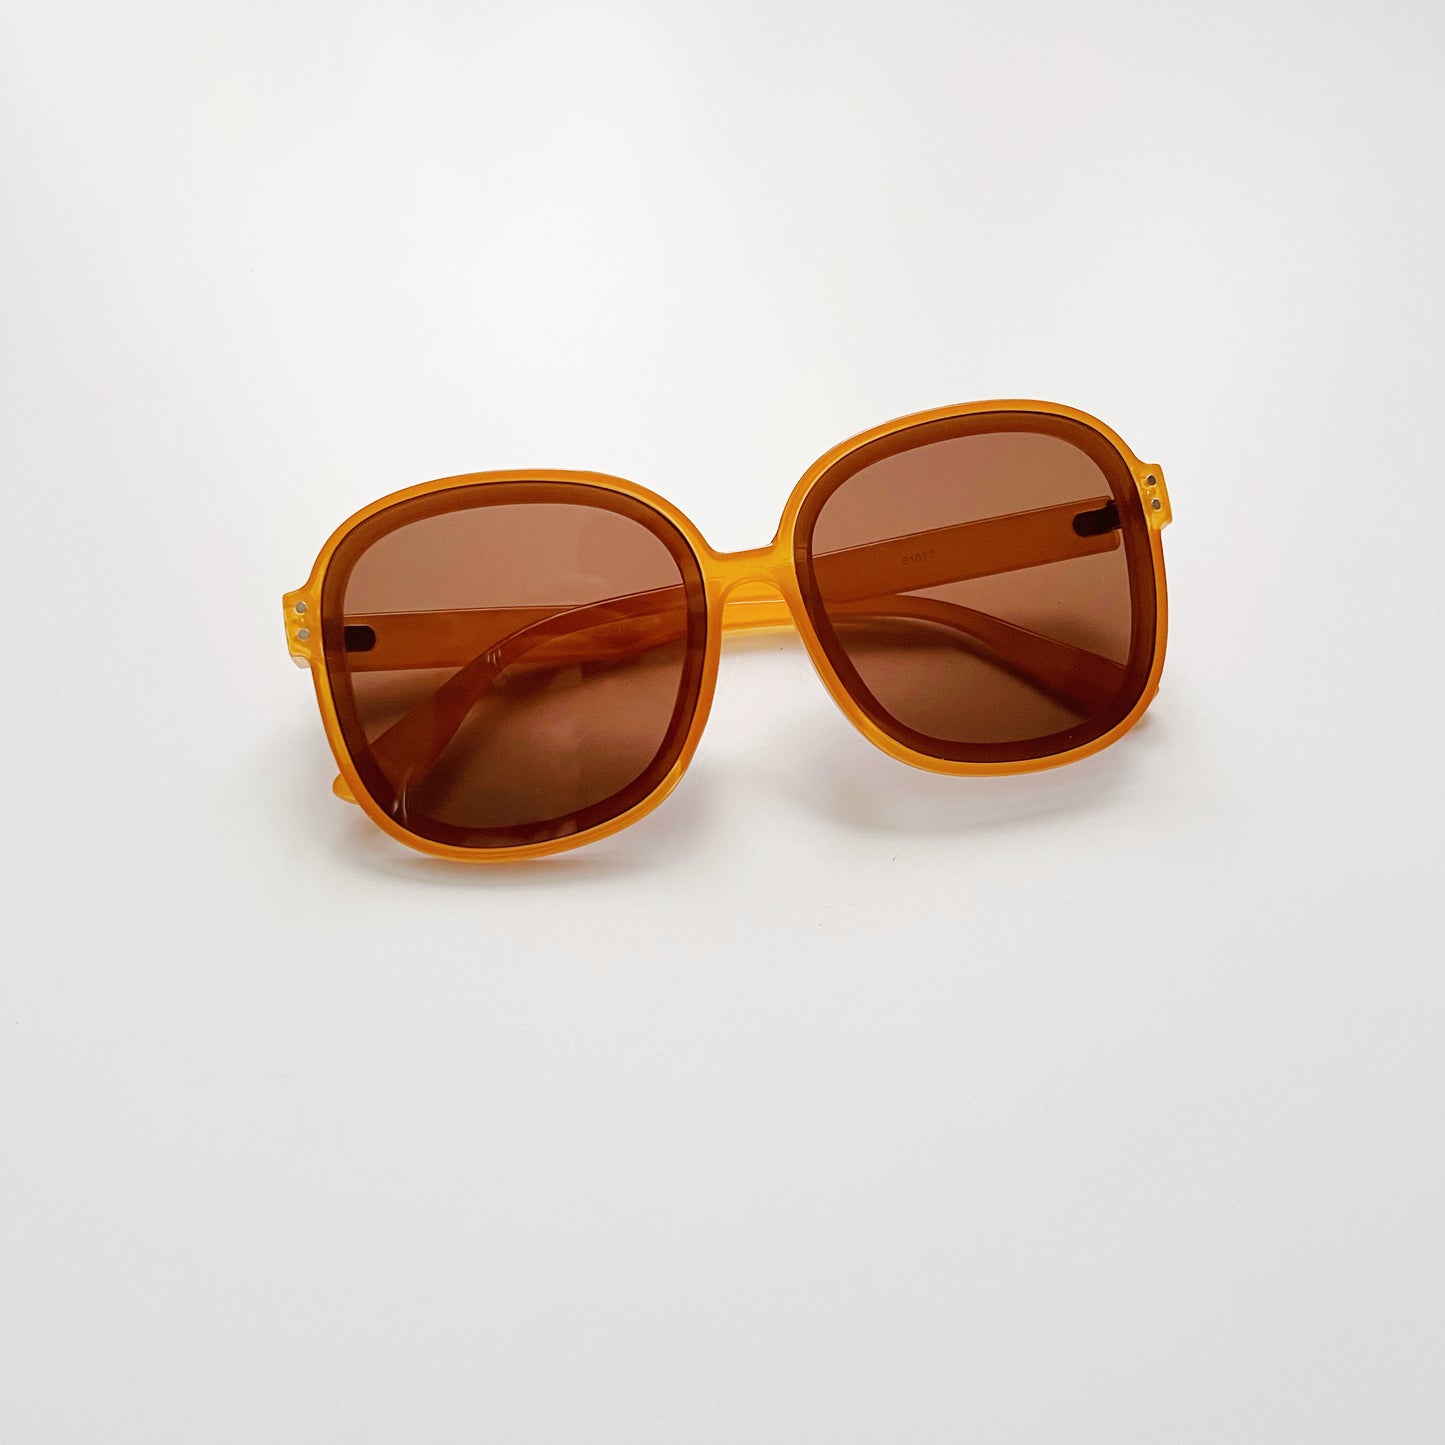 The Sophia Sunglasses